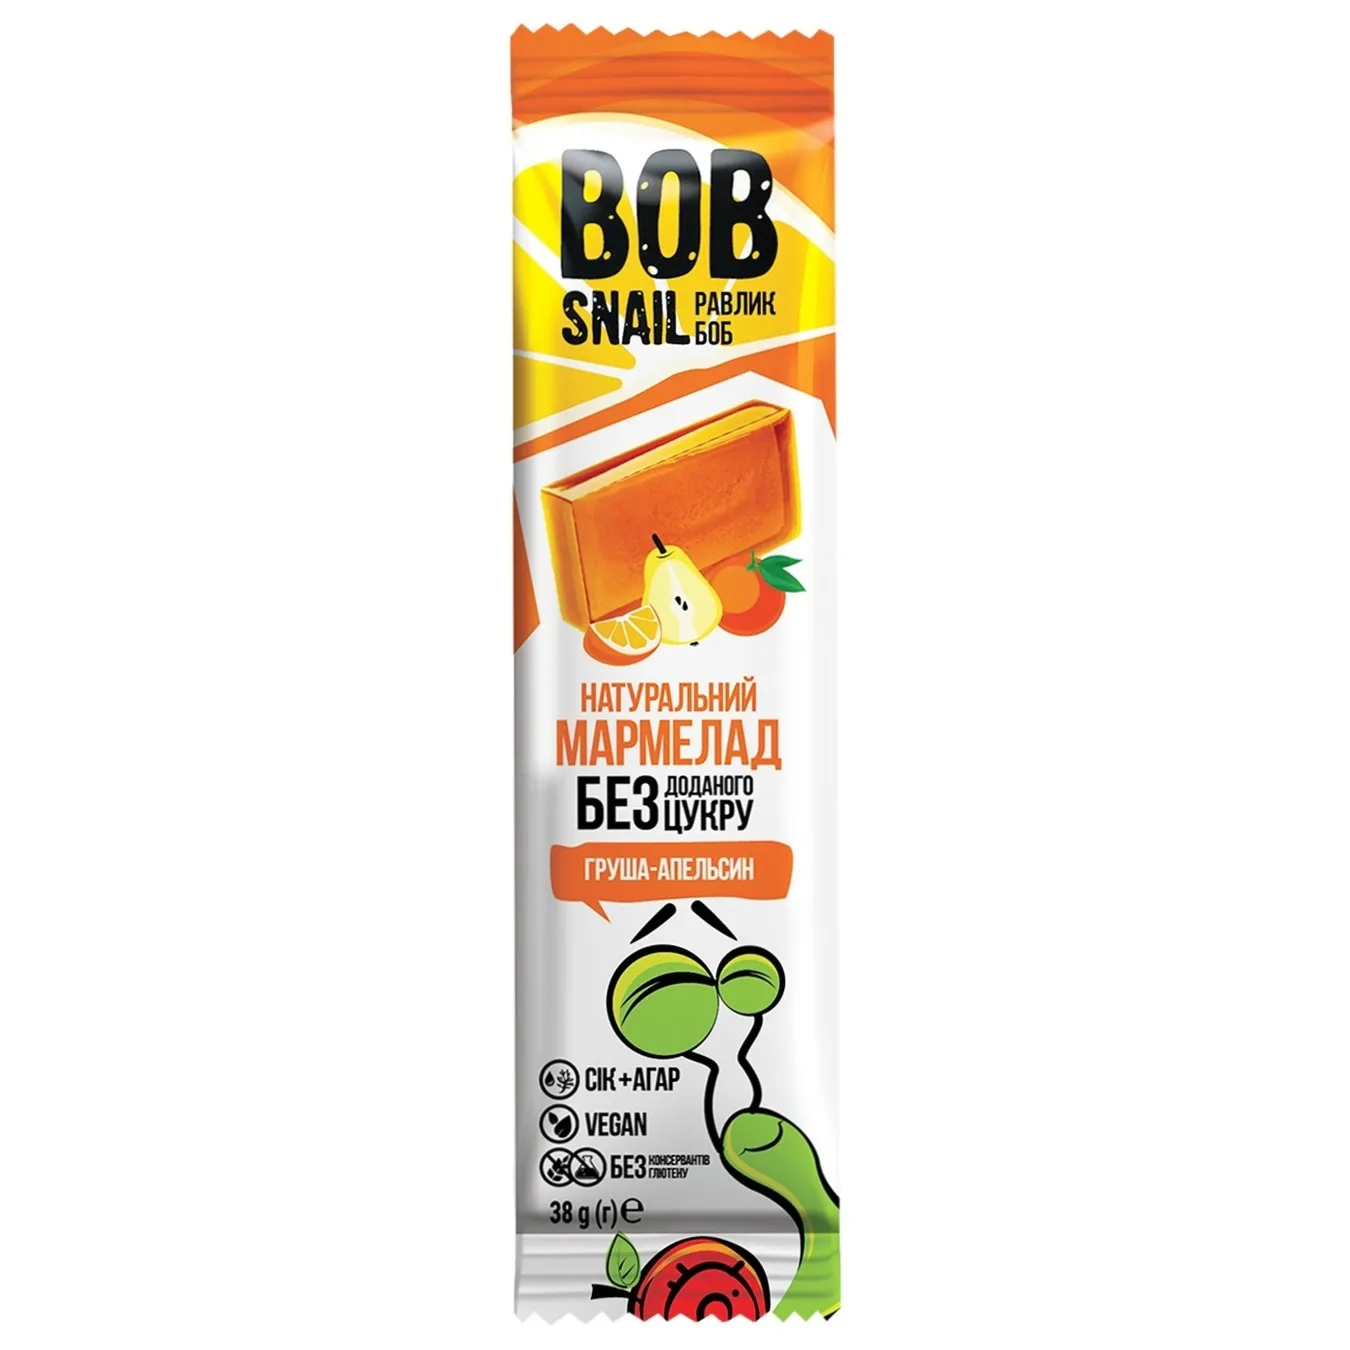 Мармелад Bob Snail груша-апельсин без цукру 38г